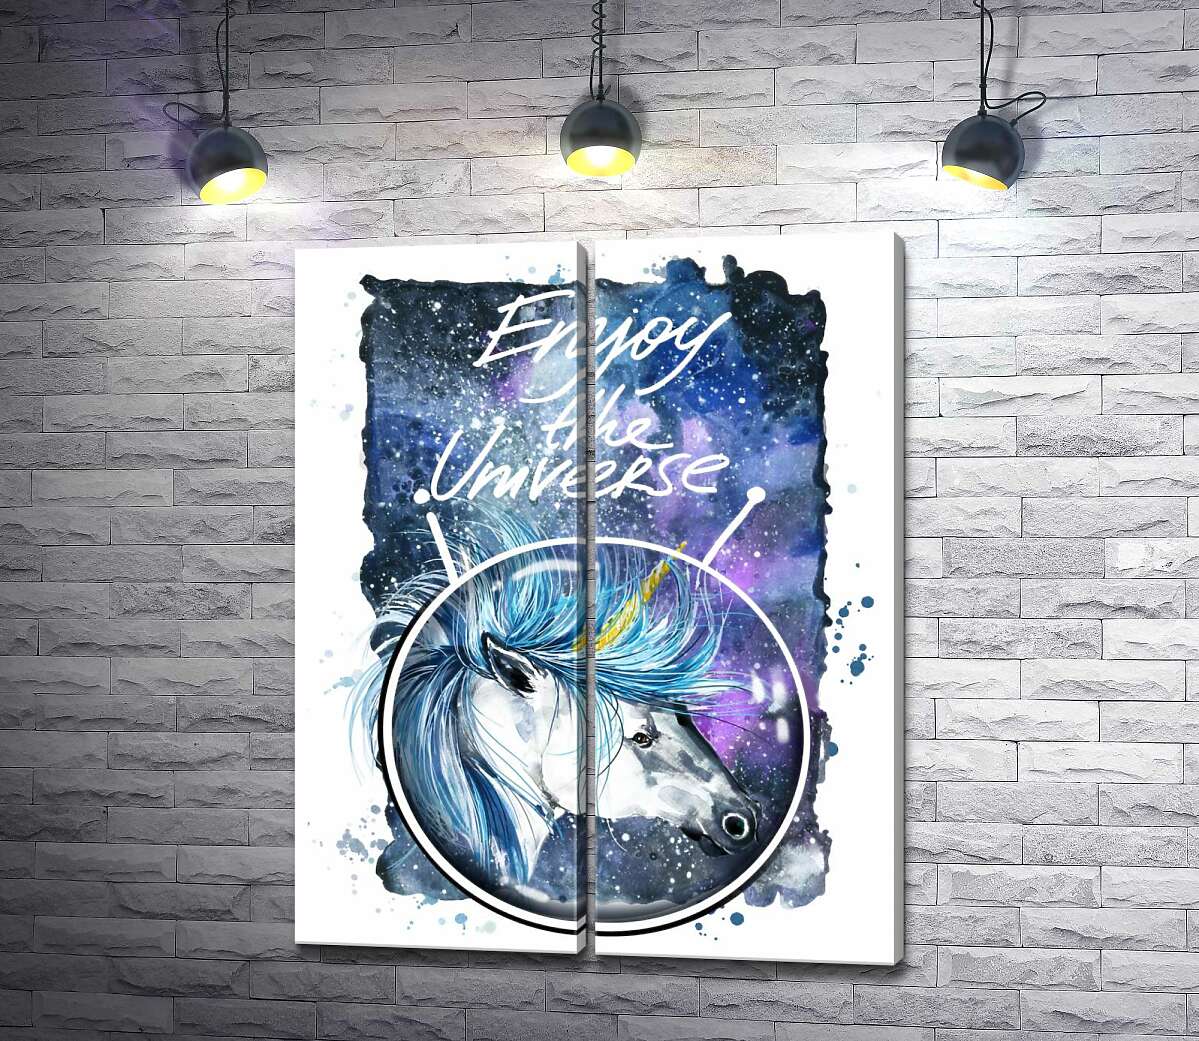 модульная картина Голубая грива единорога развевается в космическом пространстве рядом с надписью "Enjoy the Universe"